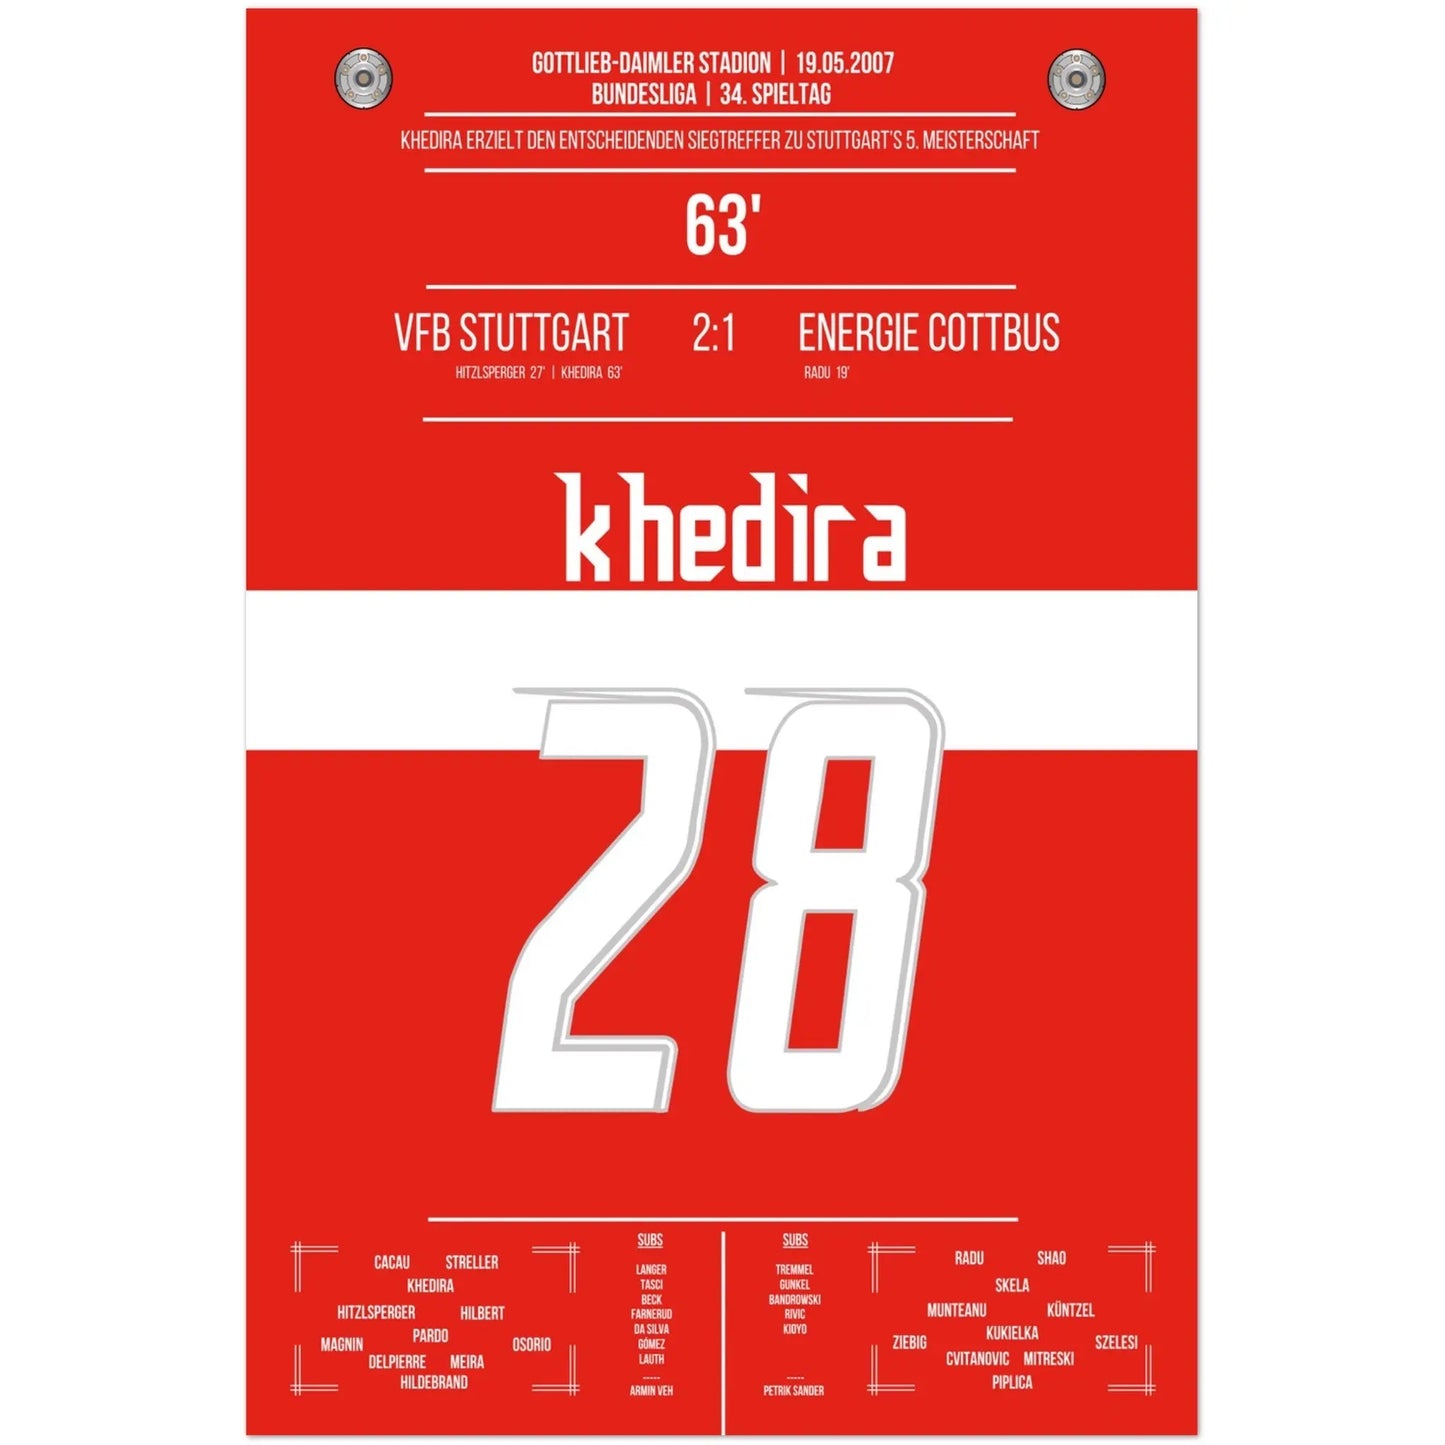 Khedira köpft Stuttgart zur Meisterschaft 2007 